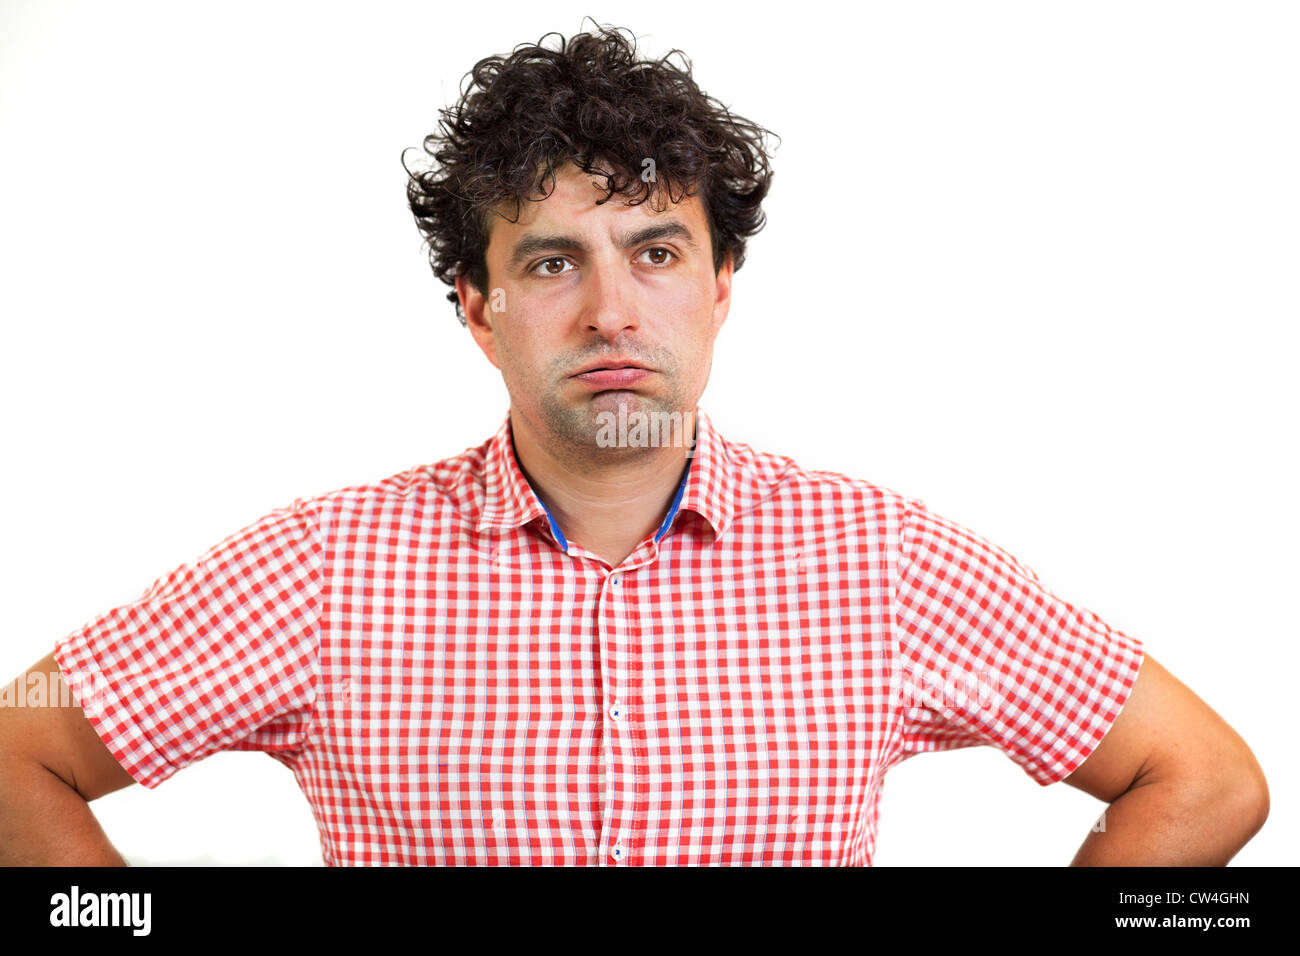 Uomo che guarda annoiato o esasperato, isolati su sfondo bianco Foto Stock